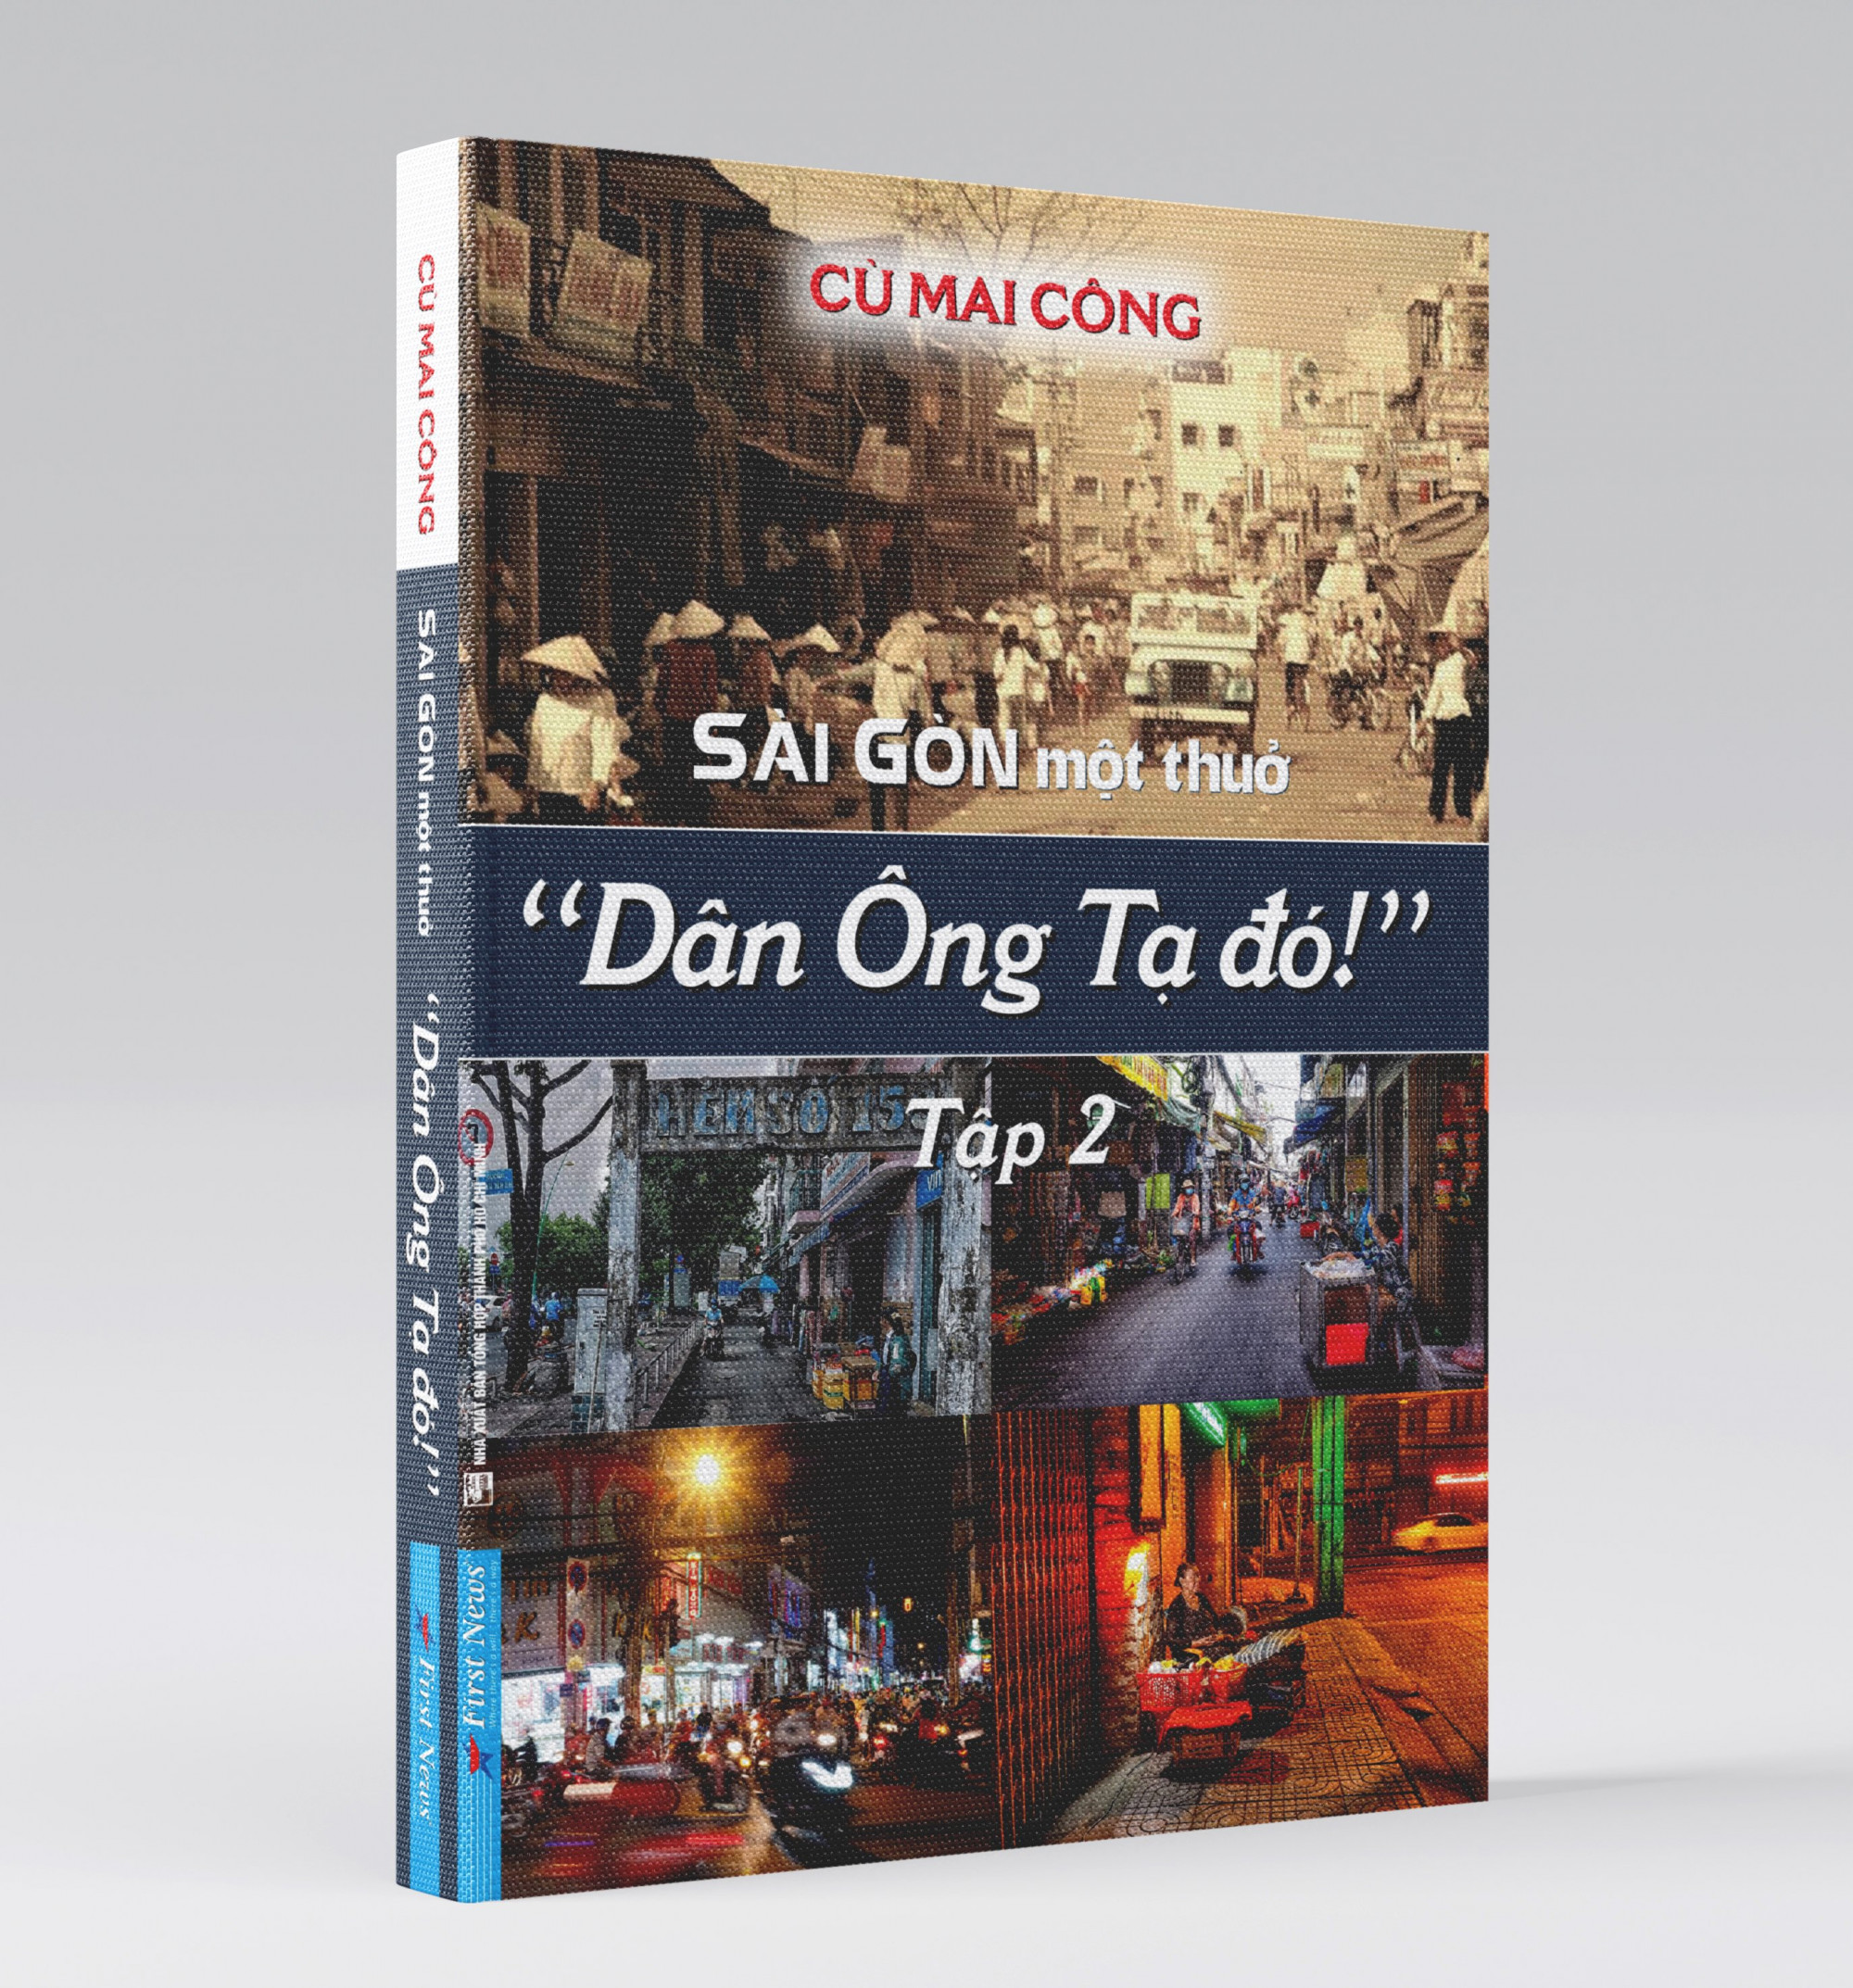 Ra mắt tập 2 “Sài Gòn Một Thuở - Dân Ông Tạ Đó!”